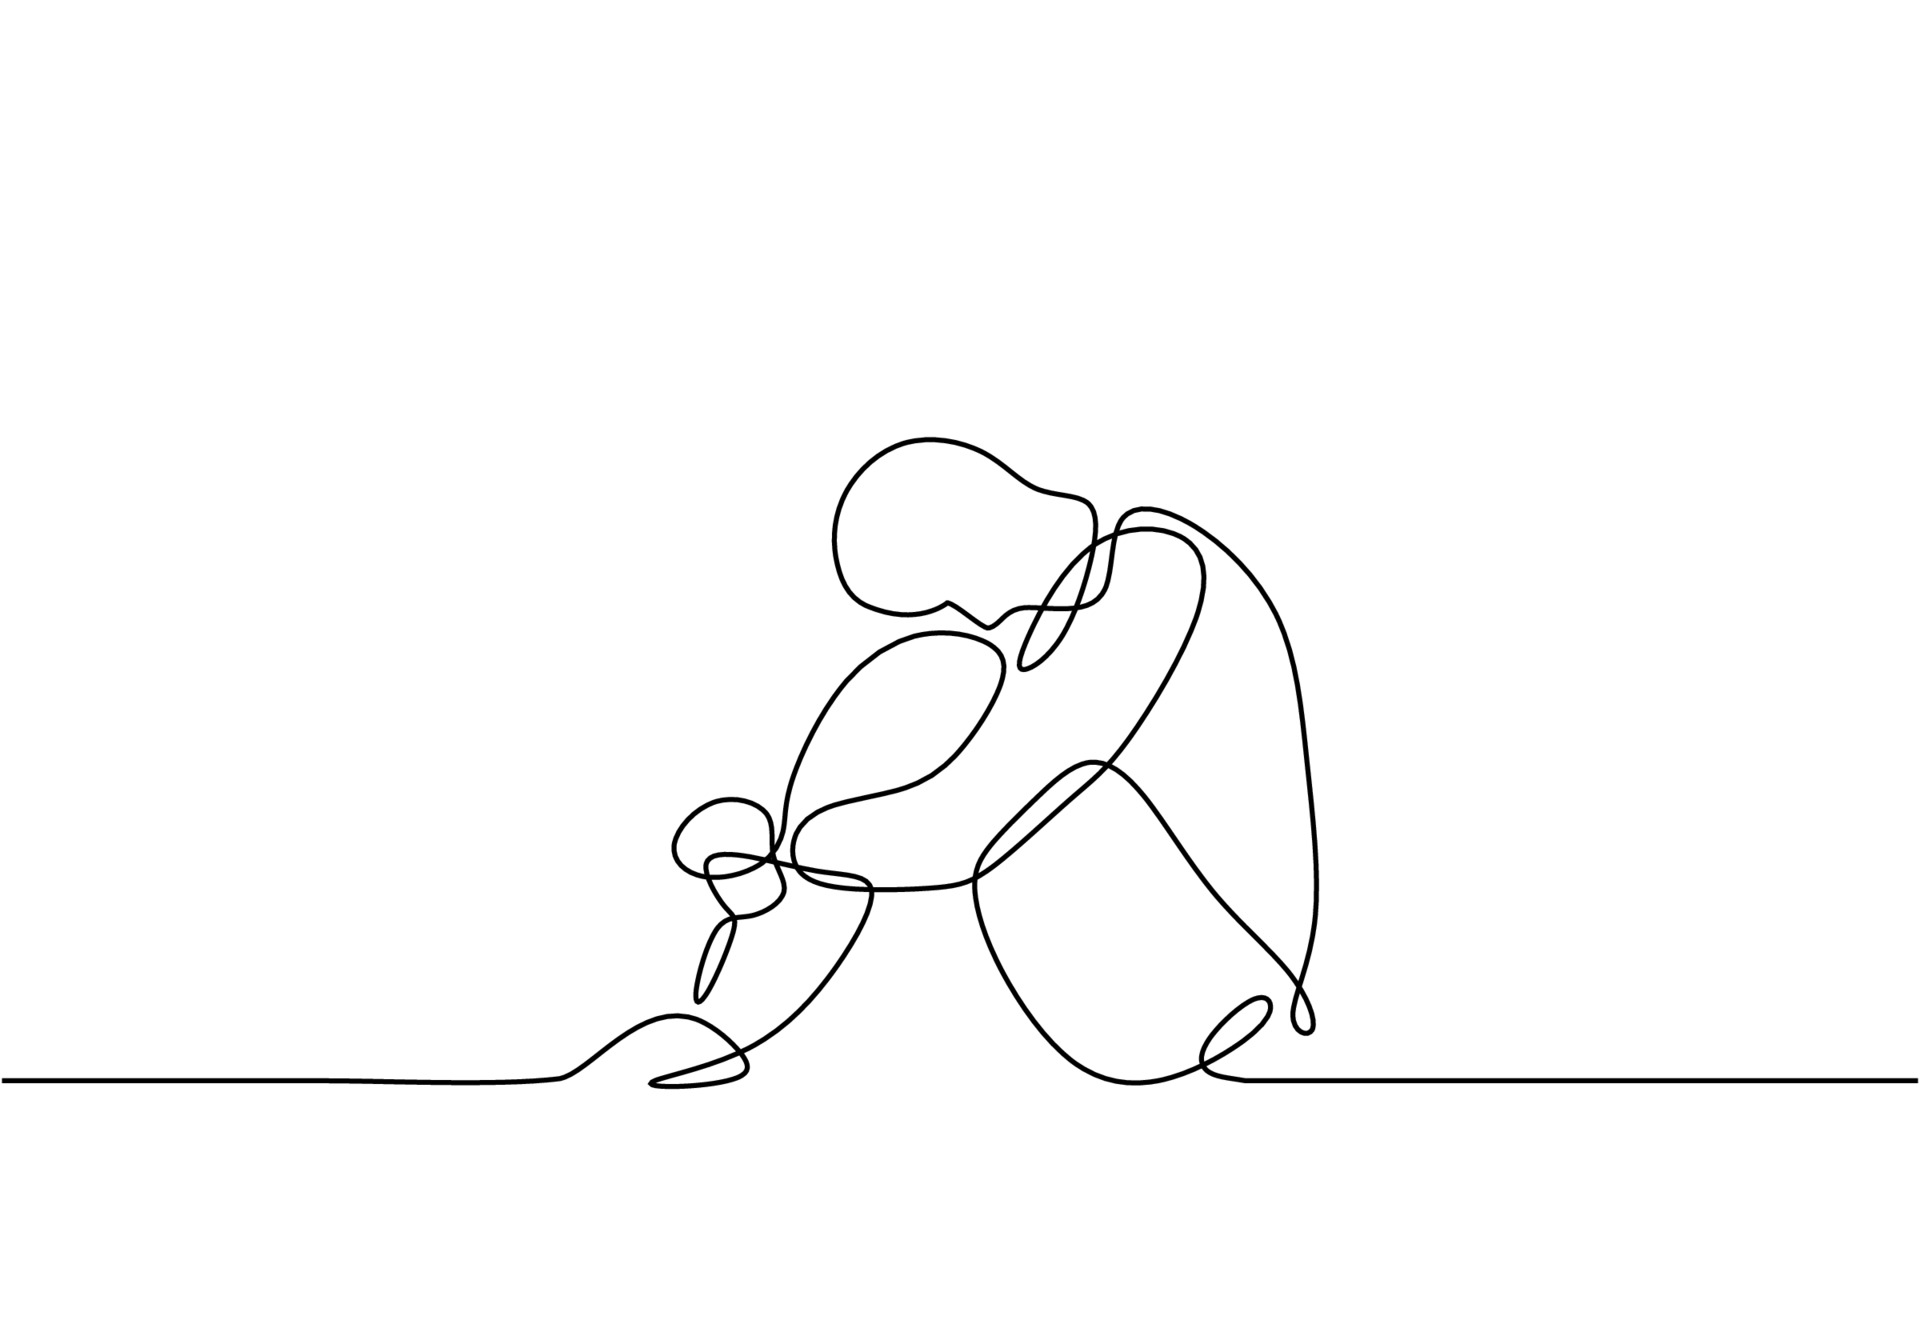 Desenho de linha contínuo de um homem em desenhos tristes e tristes